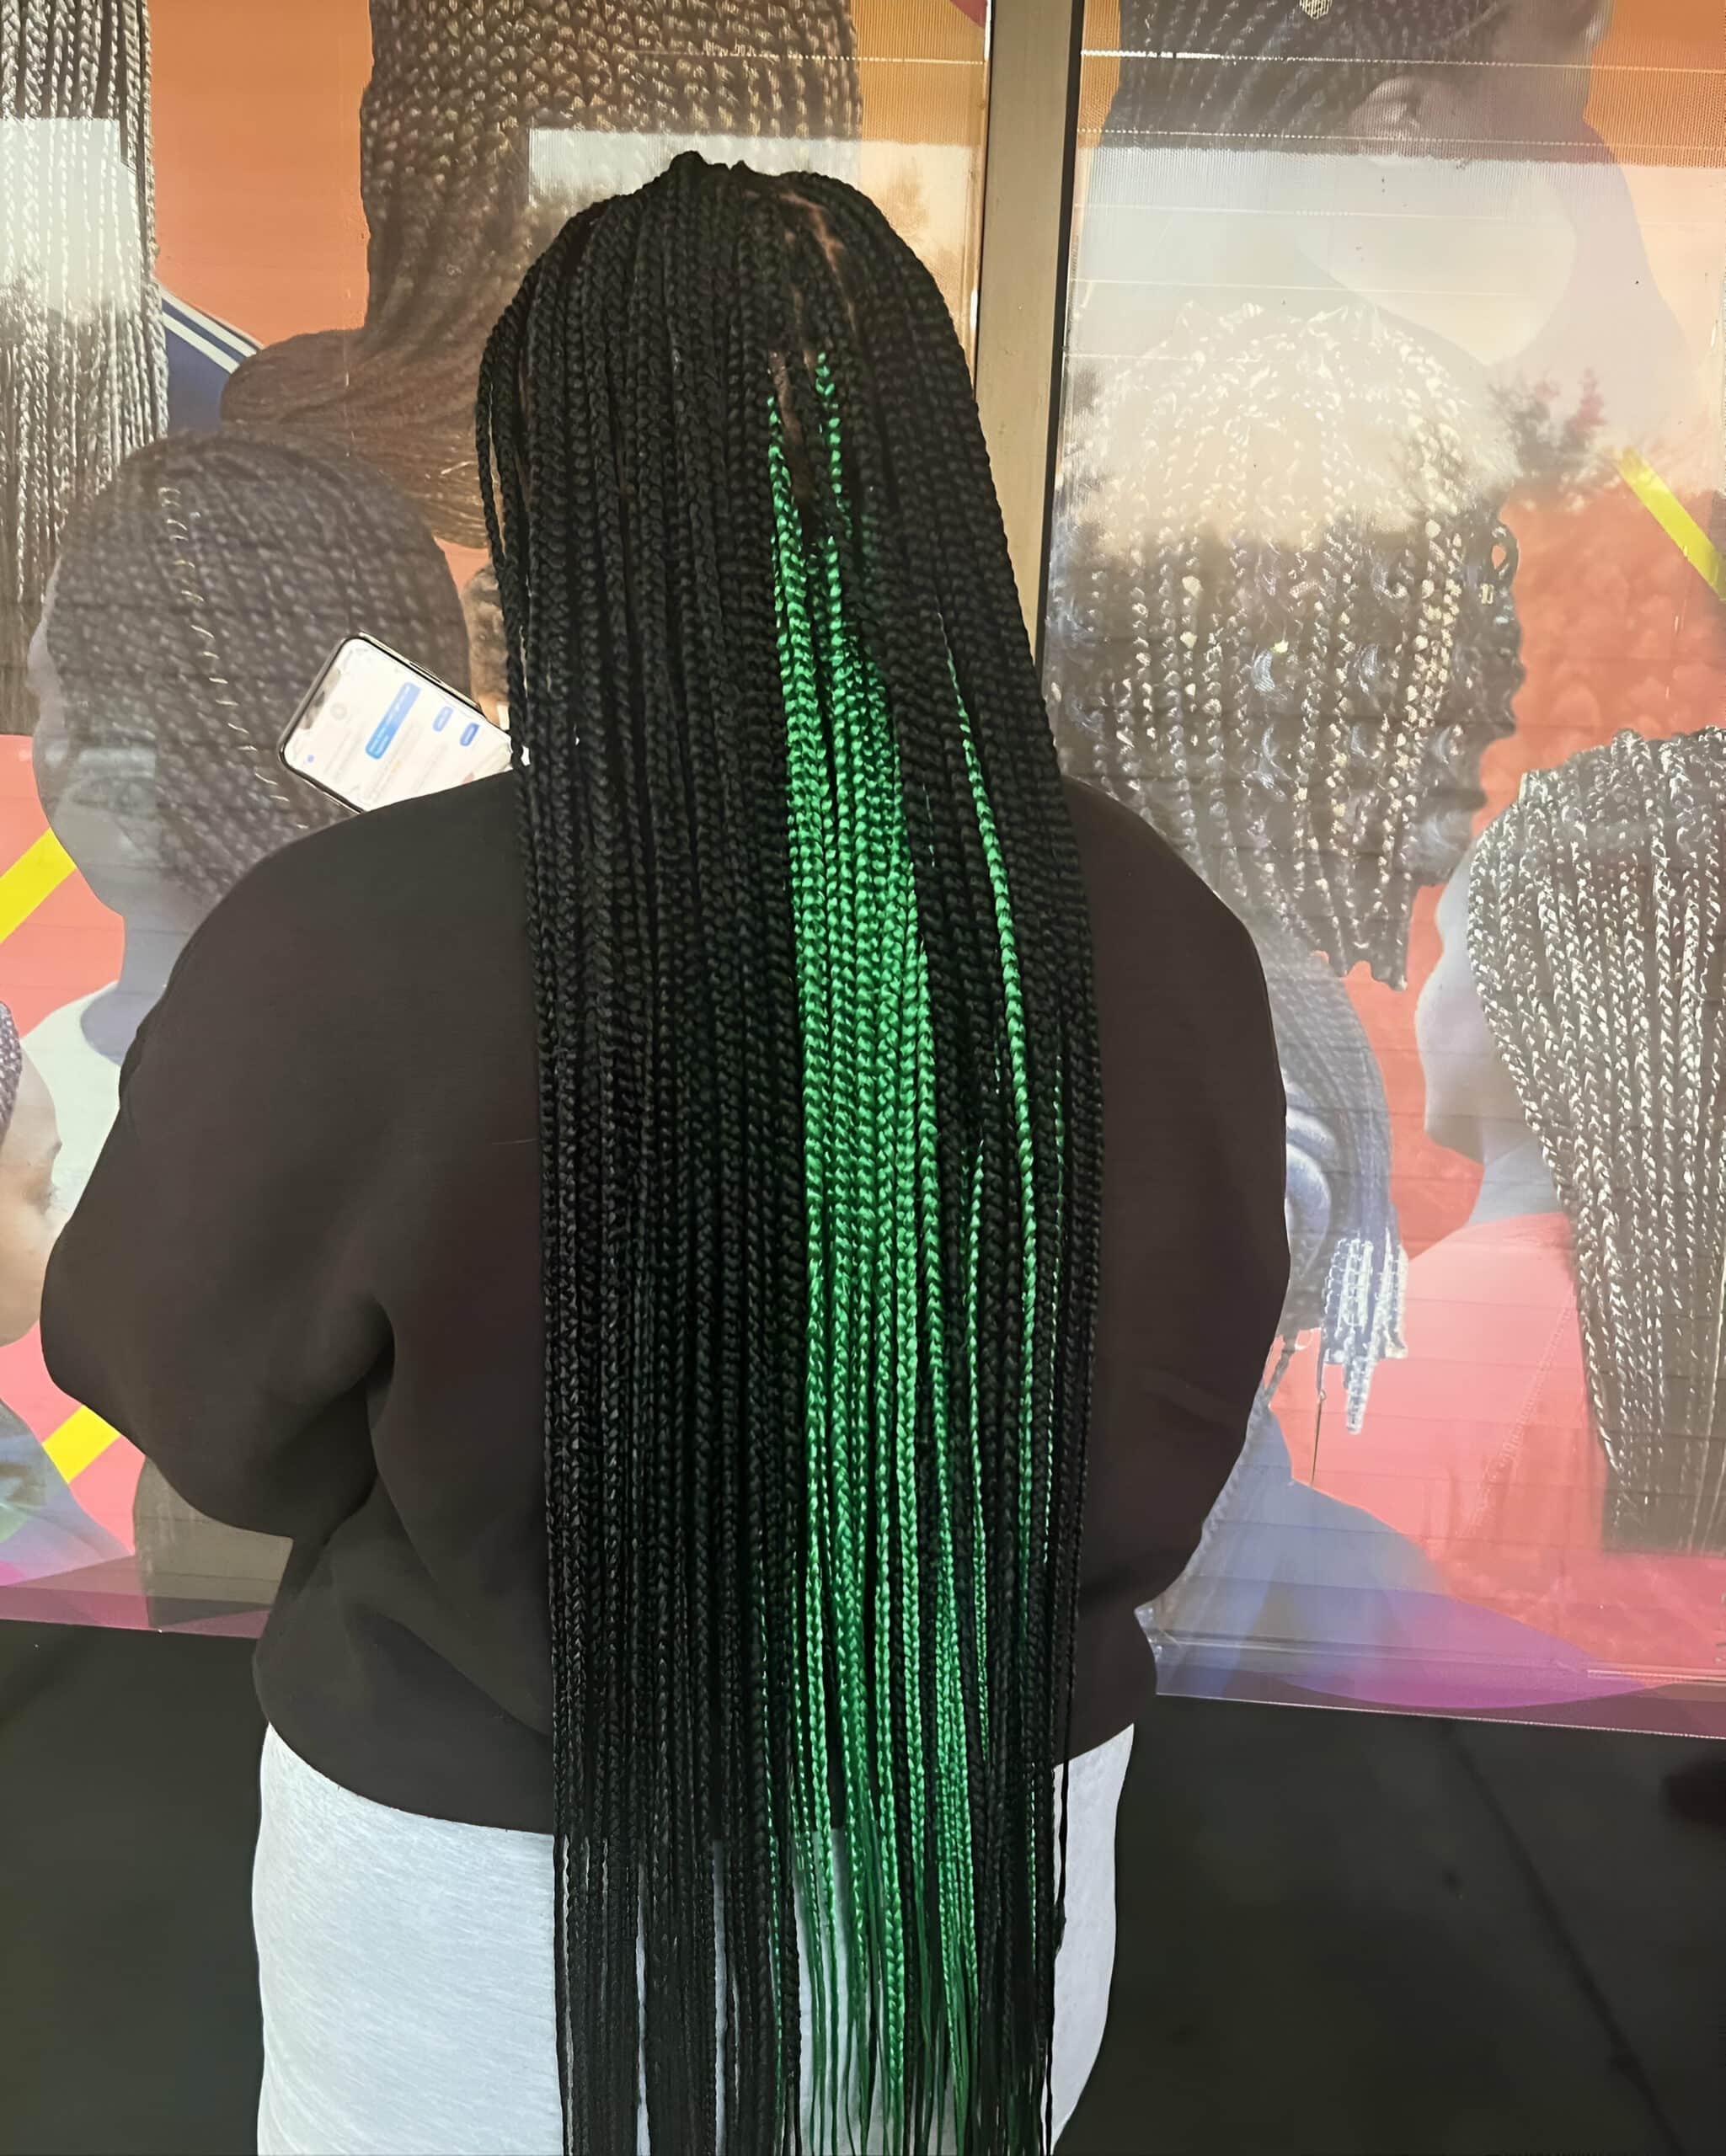 Image of Green Peekaboo Braids inspired by Peekaboo Braids Hairstyles